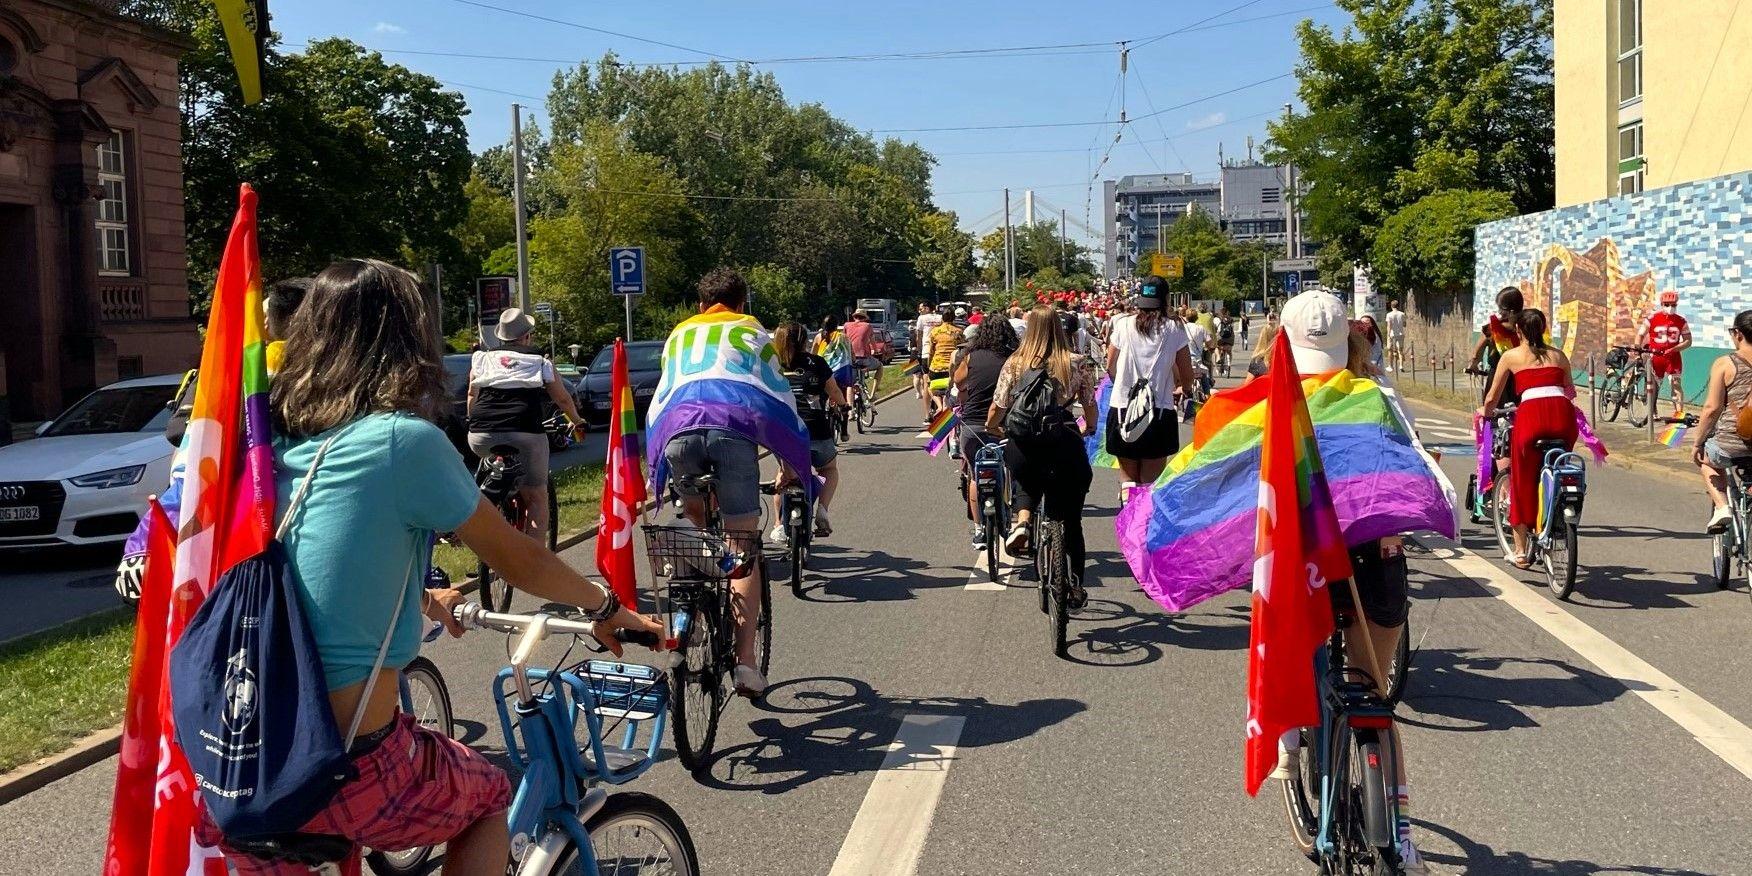 Raddemo bei Sonnenschein mit Pride-Flaggen an den Fahrrädern